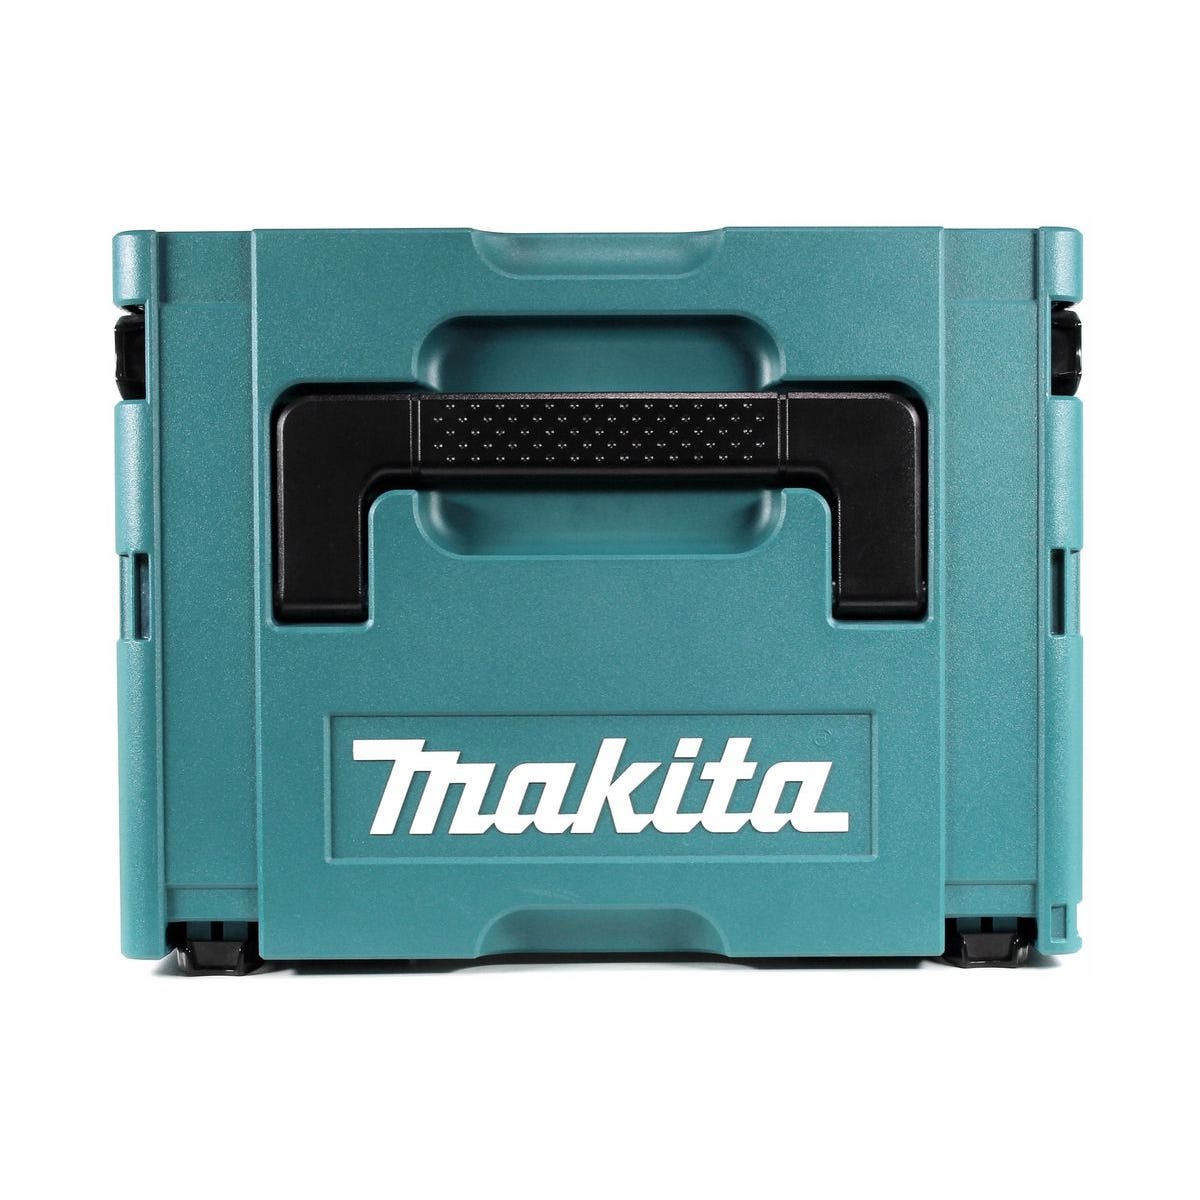 Makita DFS 251 G1J Visseuse pour cloisons sèches sans fil Brushless 18V + 1x Batterie 6,0Ah + Coffret Makpac - sans chargeur 2